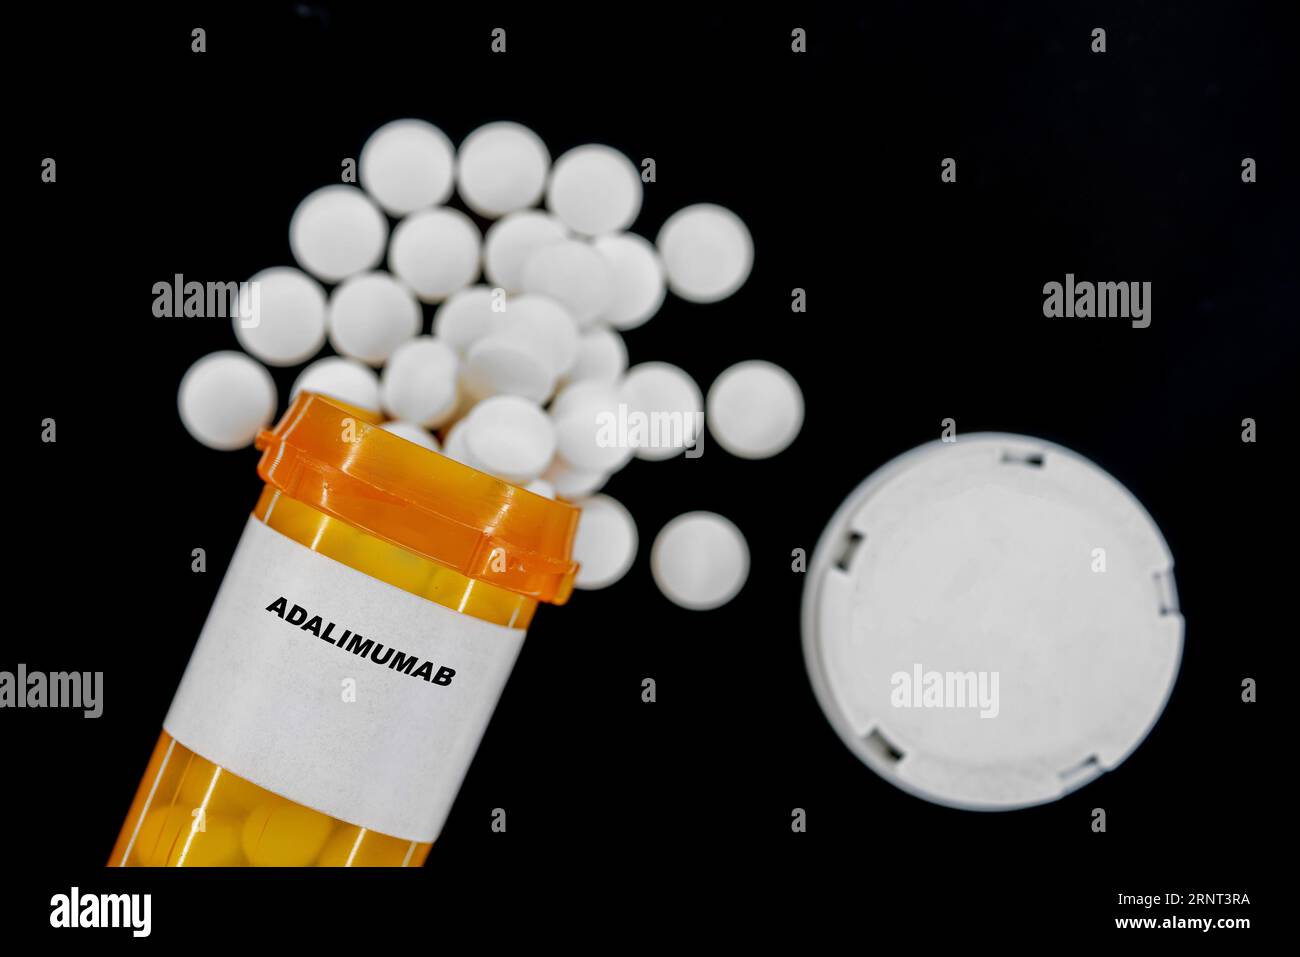 Adalimumab Rx píldoras médicas en botella pláctica con tabletas. Las pastillas se derraman desde el recipiente amarillo. Foto de stock